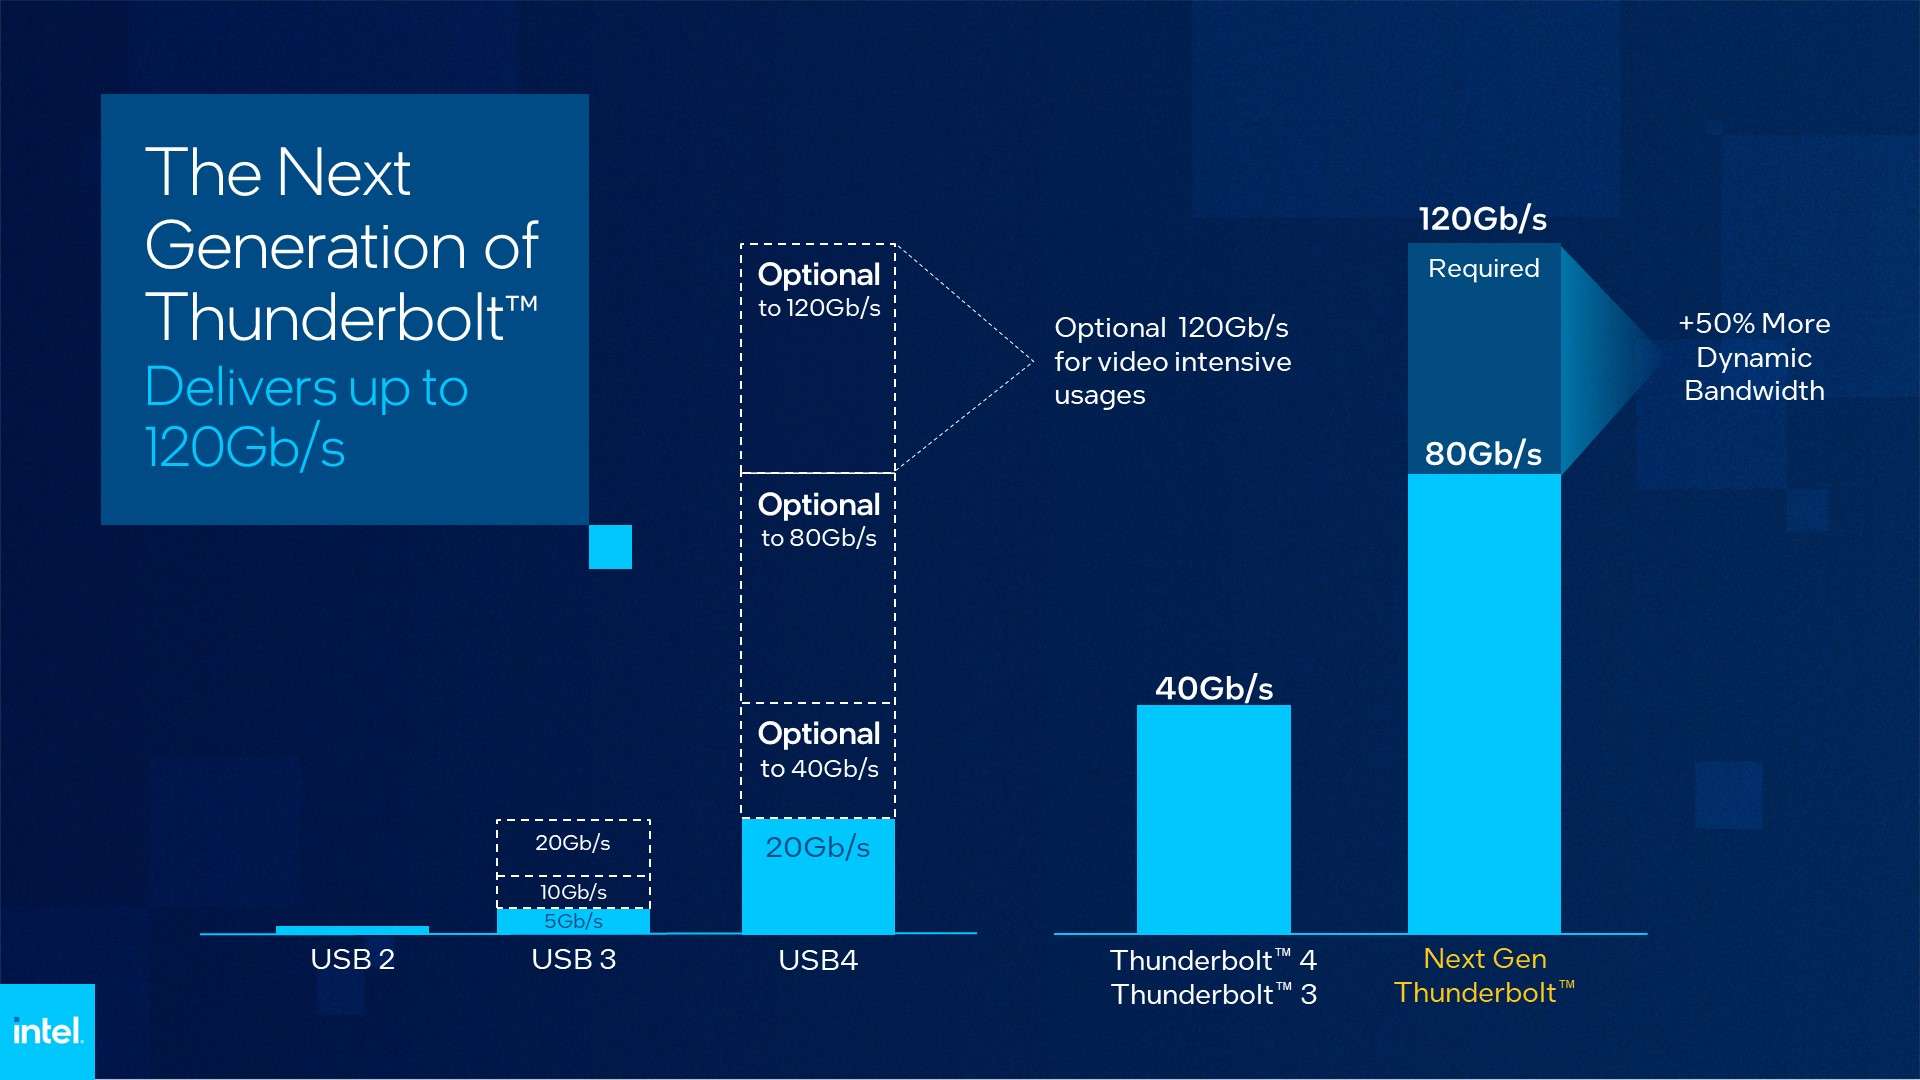 Nowa generacja Thunderbolt może osiągać do 120 Gb/s, tak jak USB4 2.0